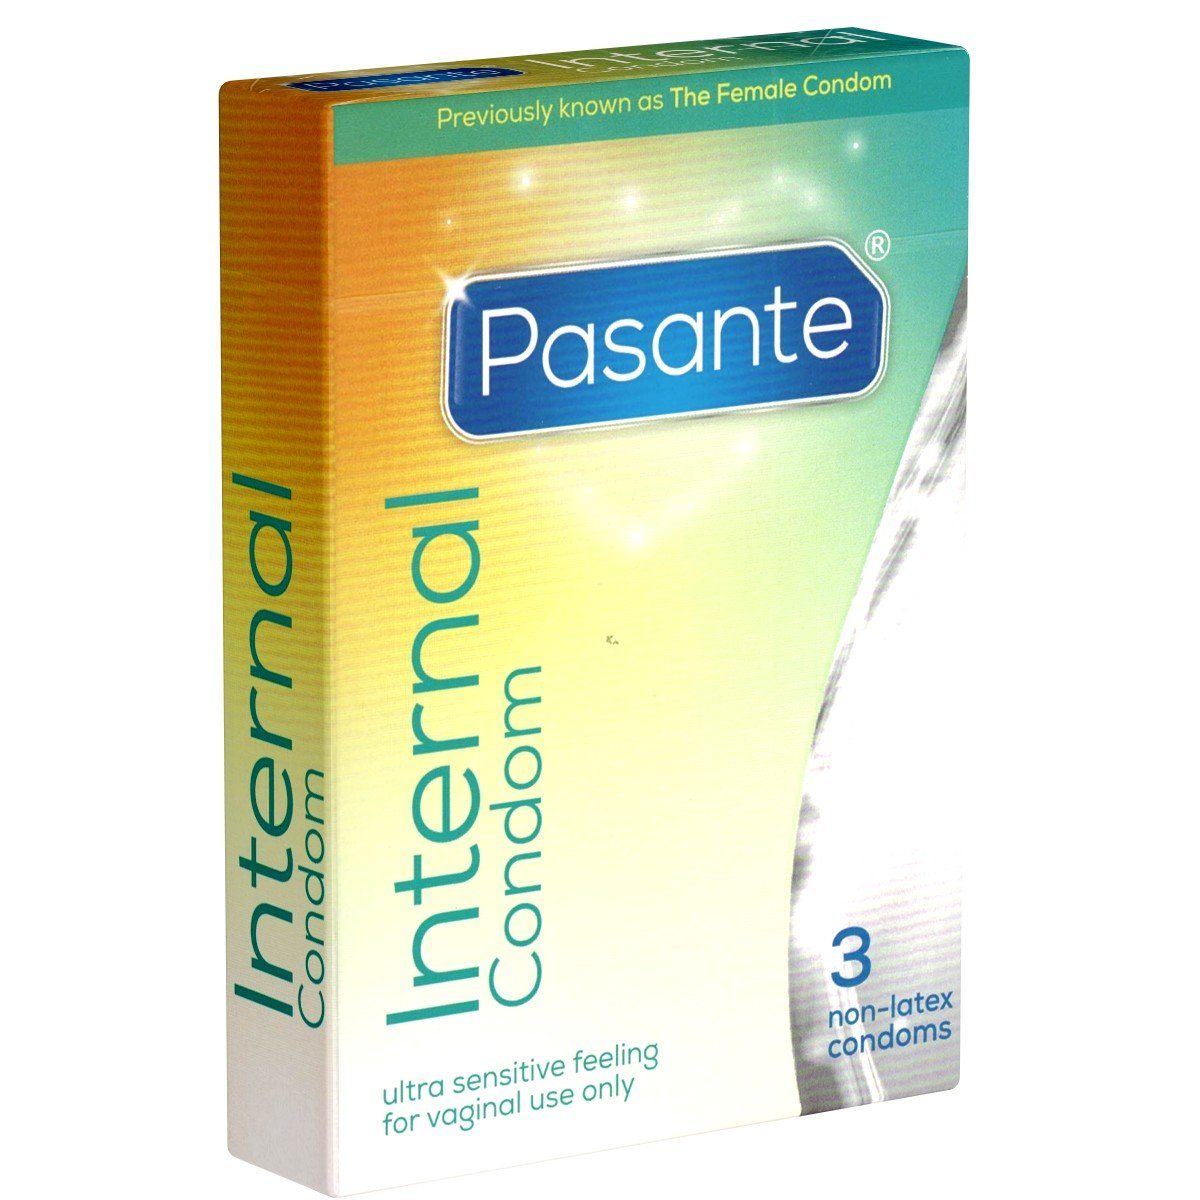 Frauen, Verhütung mit, Verhütung Condom» 3 für Pasante St., «Internal latexfreie aktive Frauenkondome, Kondome Packung Frauenkondome für (Femidom) hormonfreie